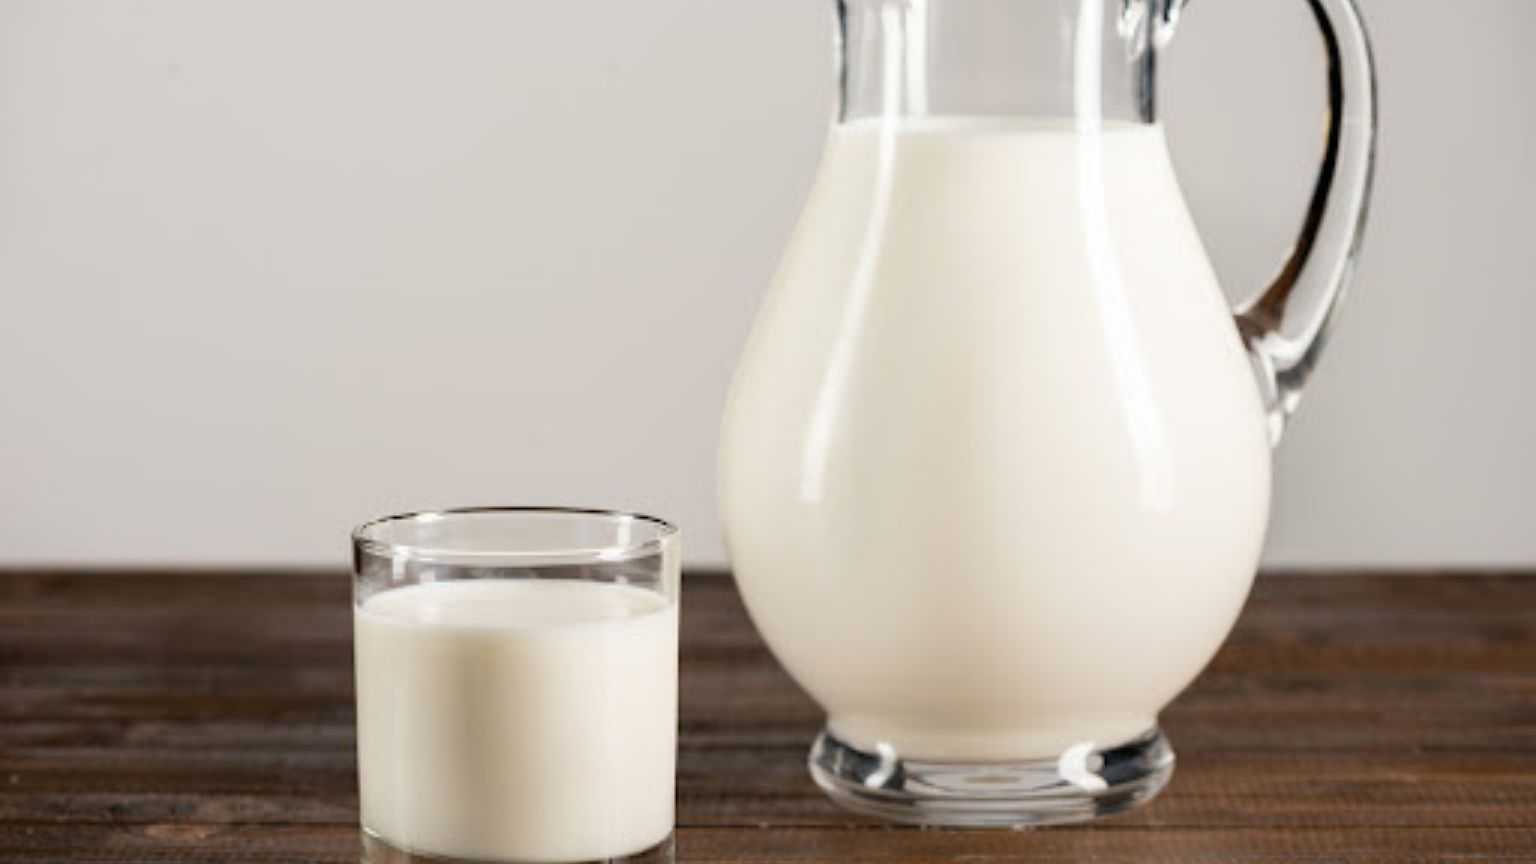 دودھ اور جلیبی سردیوں میں کھانے کے حیرت انگیز میڈیکل فوائد